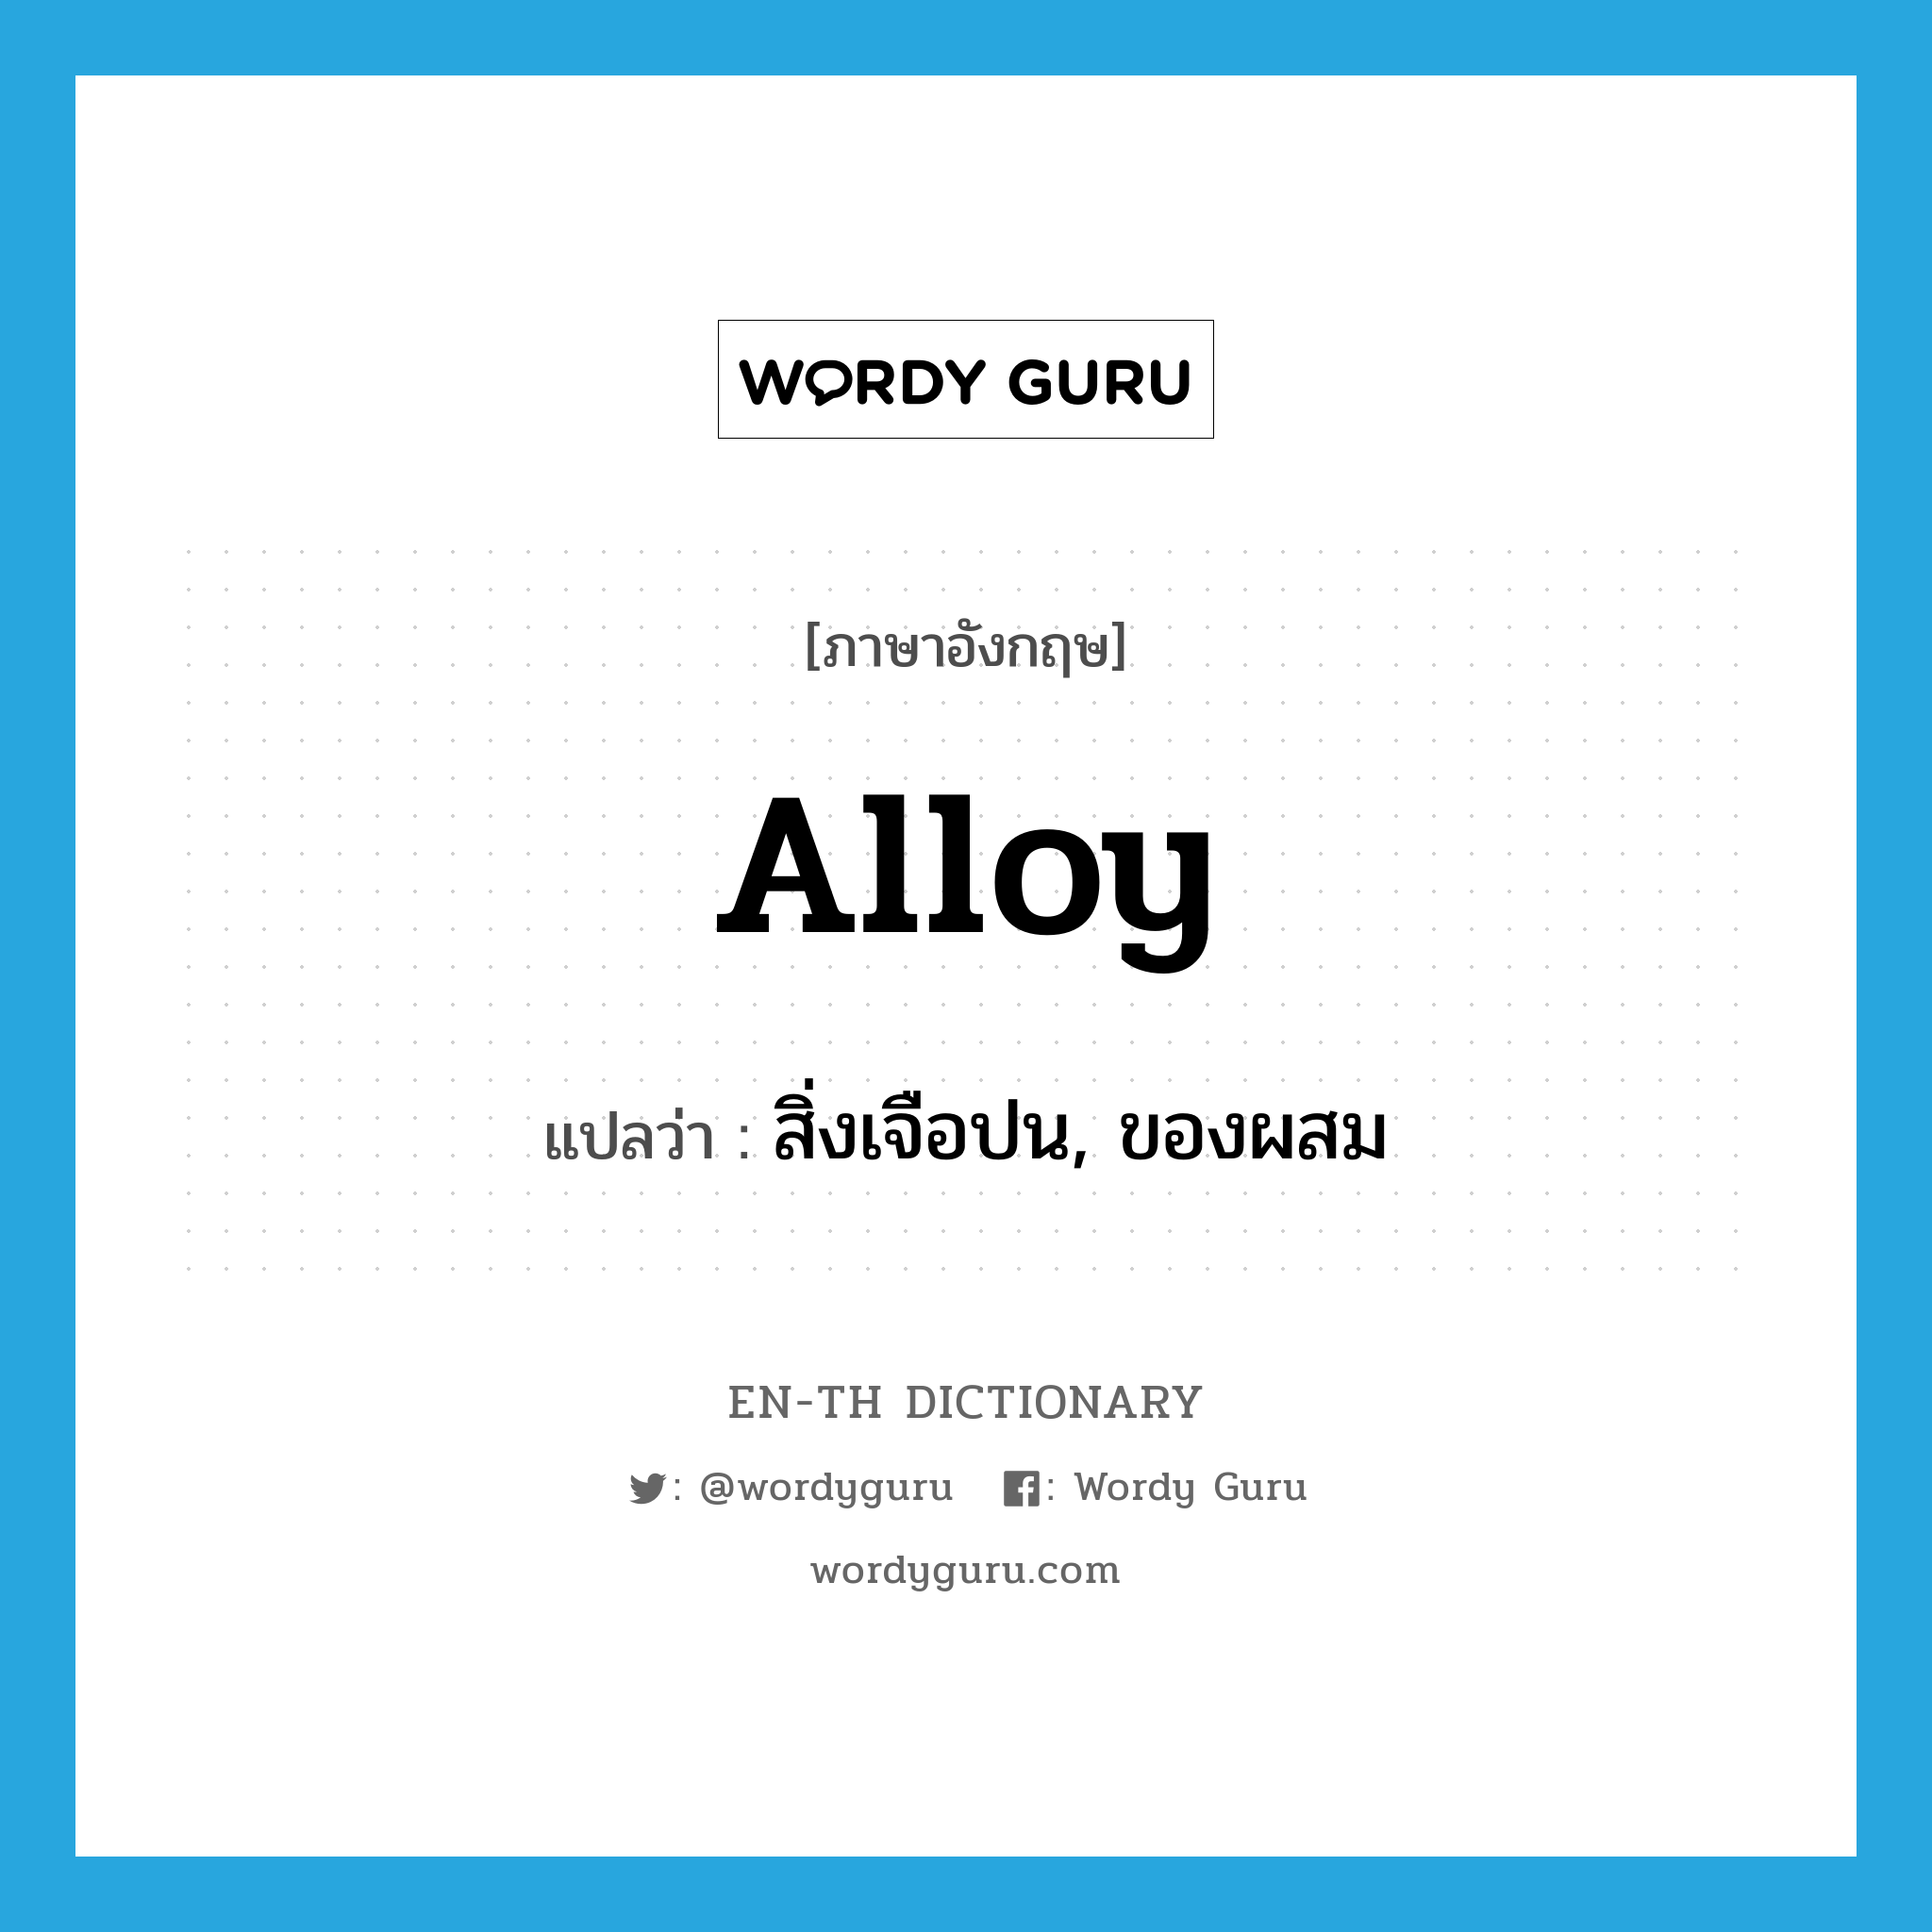 alloy แปลว่า?, คำศัพท์ภาษาอังกฤษ alloy แปลว่า สิ่งเจือปน, ของผสม ประเภท N หมวด N